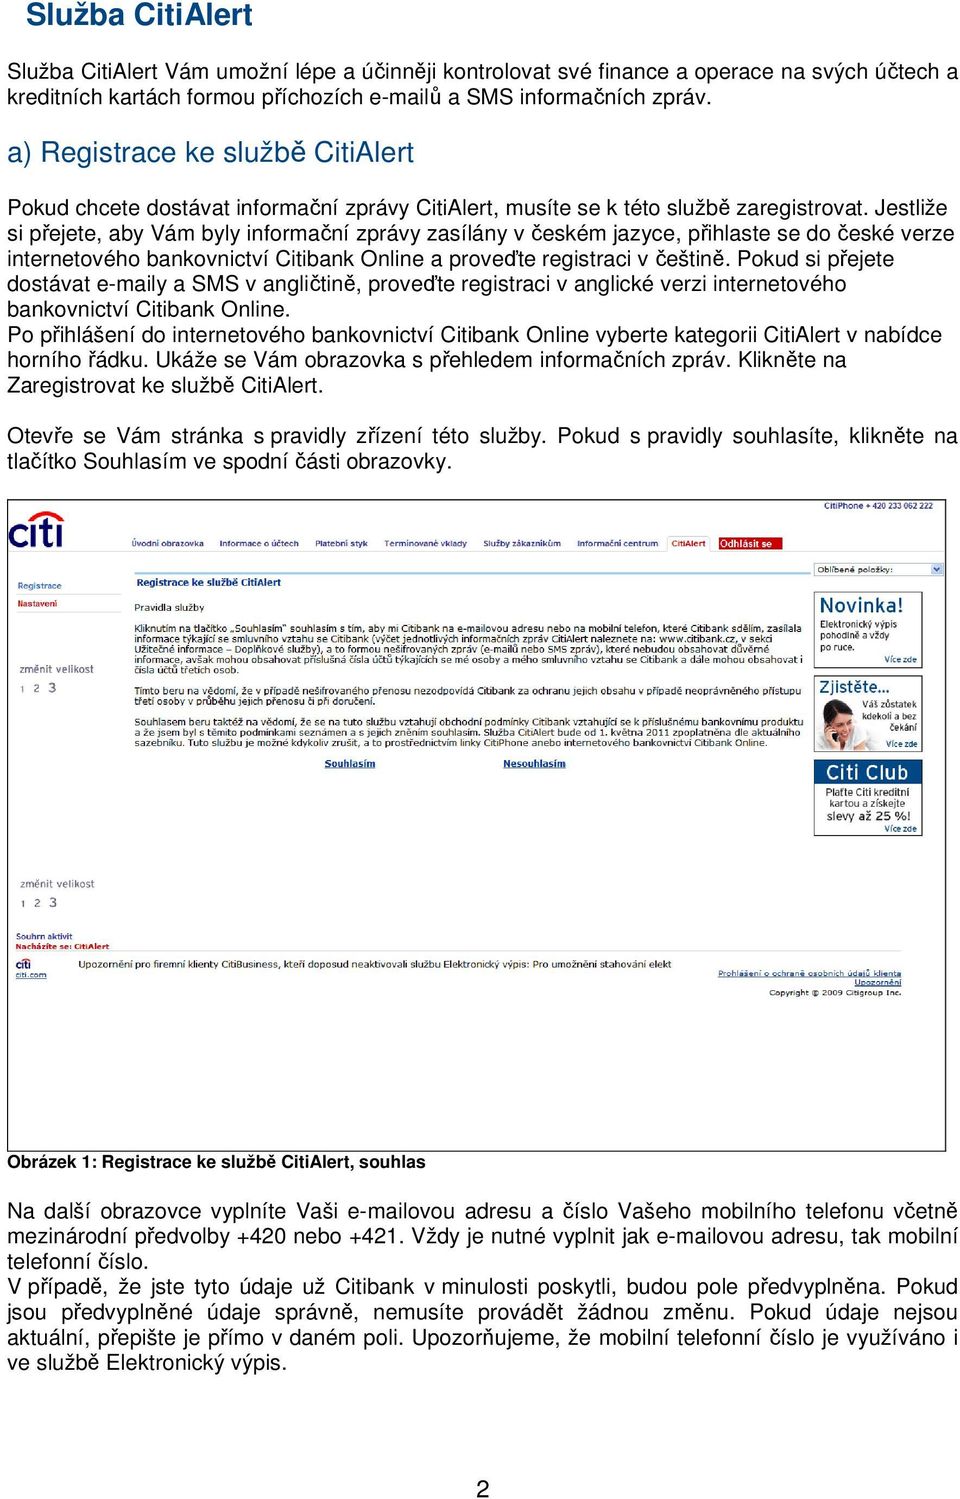 Jestliže si přejete, aby Vám byly informační zprávy zasílány v českém jazyce, přihlaste se do české verze internetového bankovnictví Citibank Online a proveďte registraci v češtině.